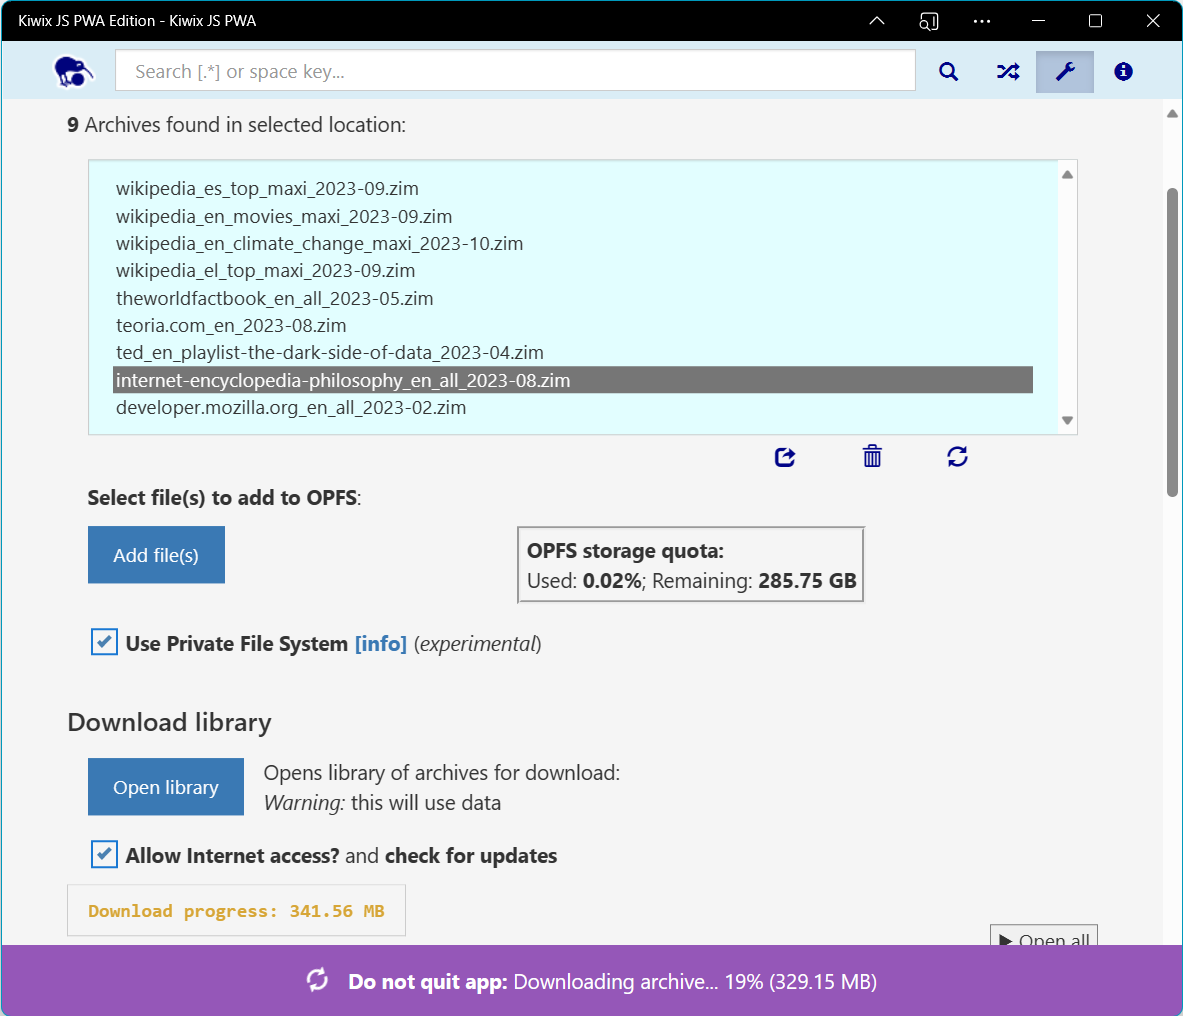 Interfaz de usuario de Kiwix con una barra en la parte inferior que le advierte al usuario que no cierre la aplicación y muestra el progreso de la descarga del archivo .zim.